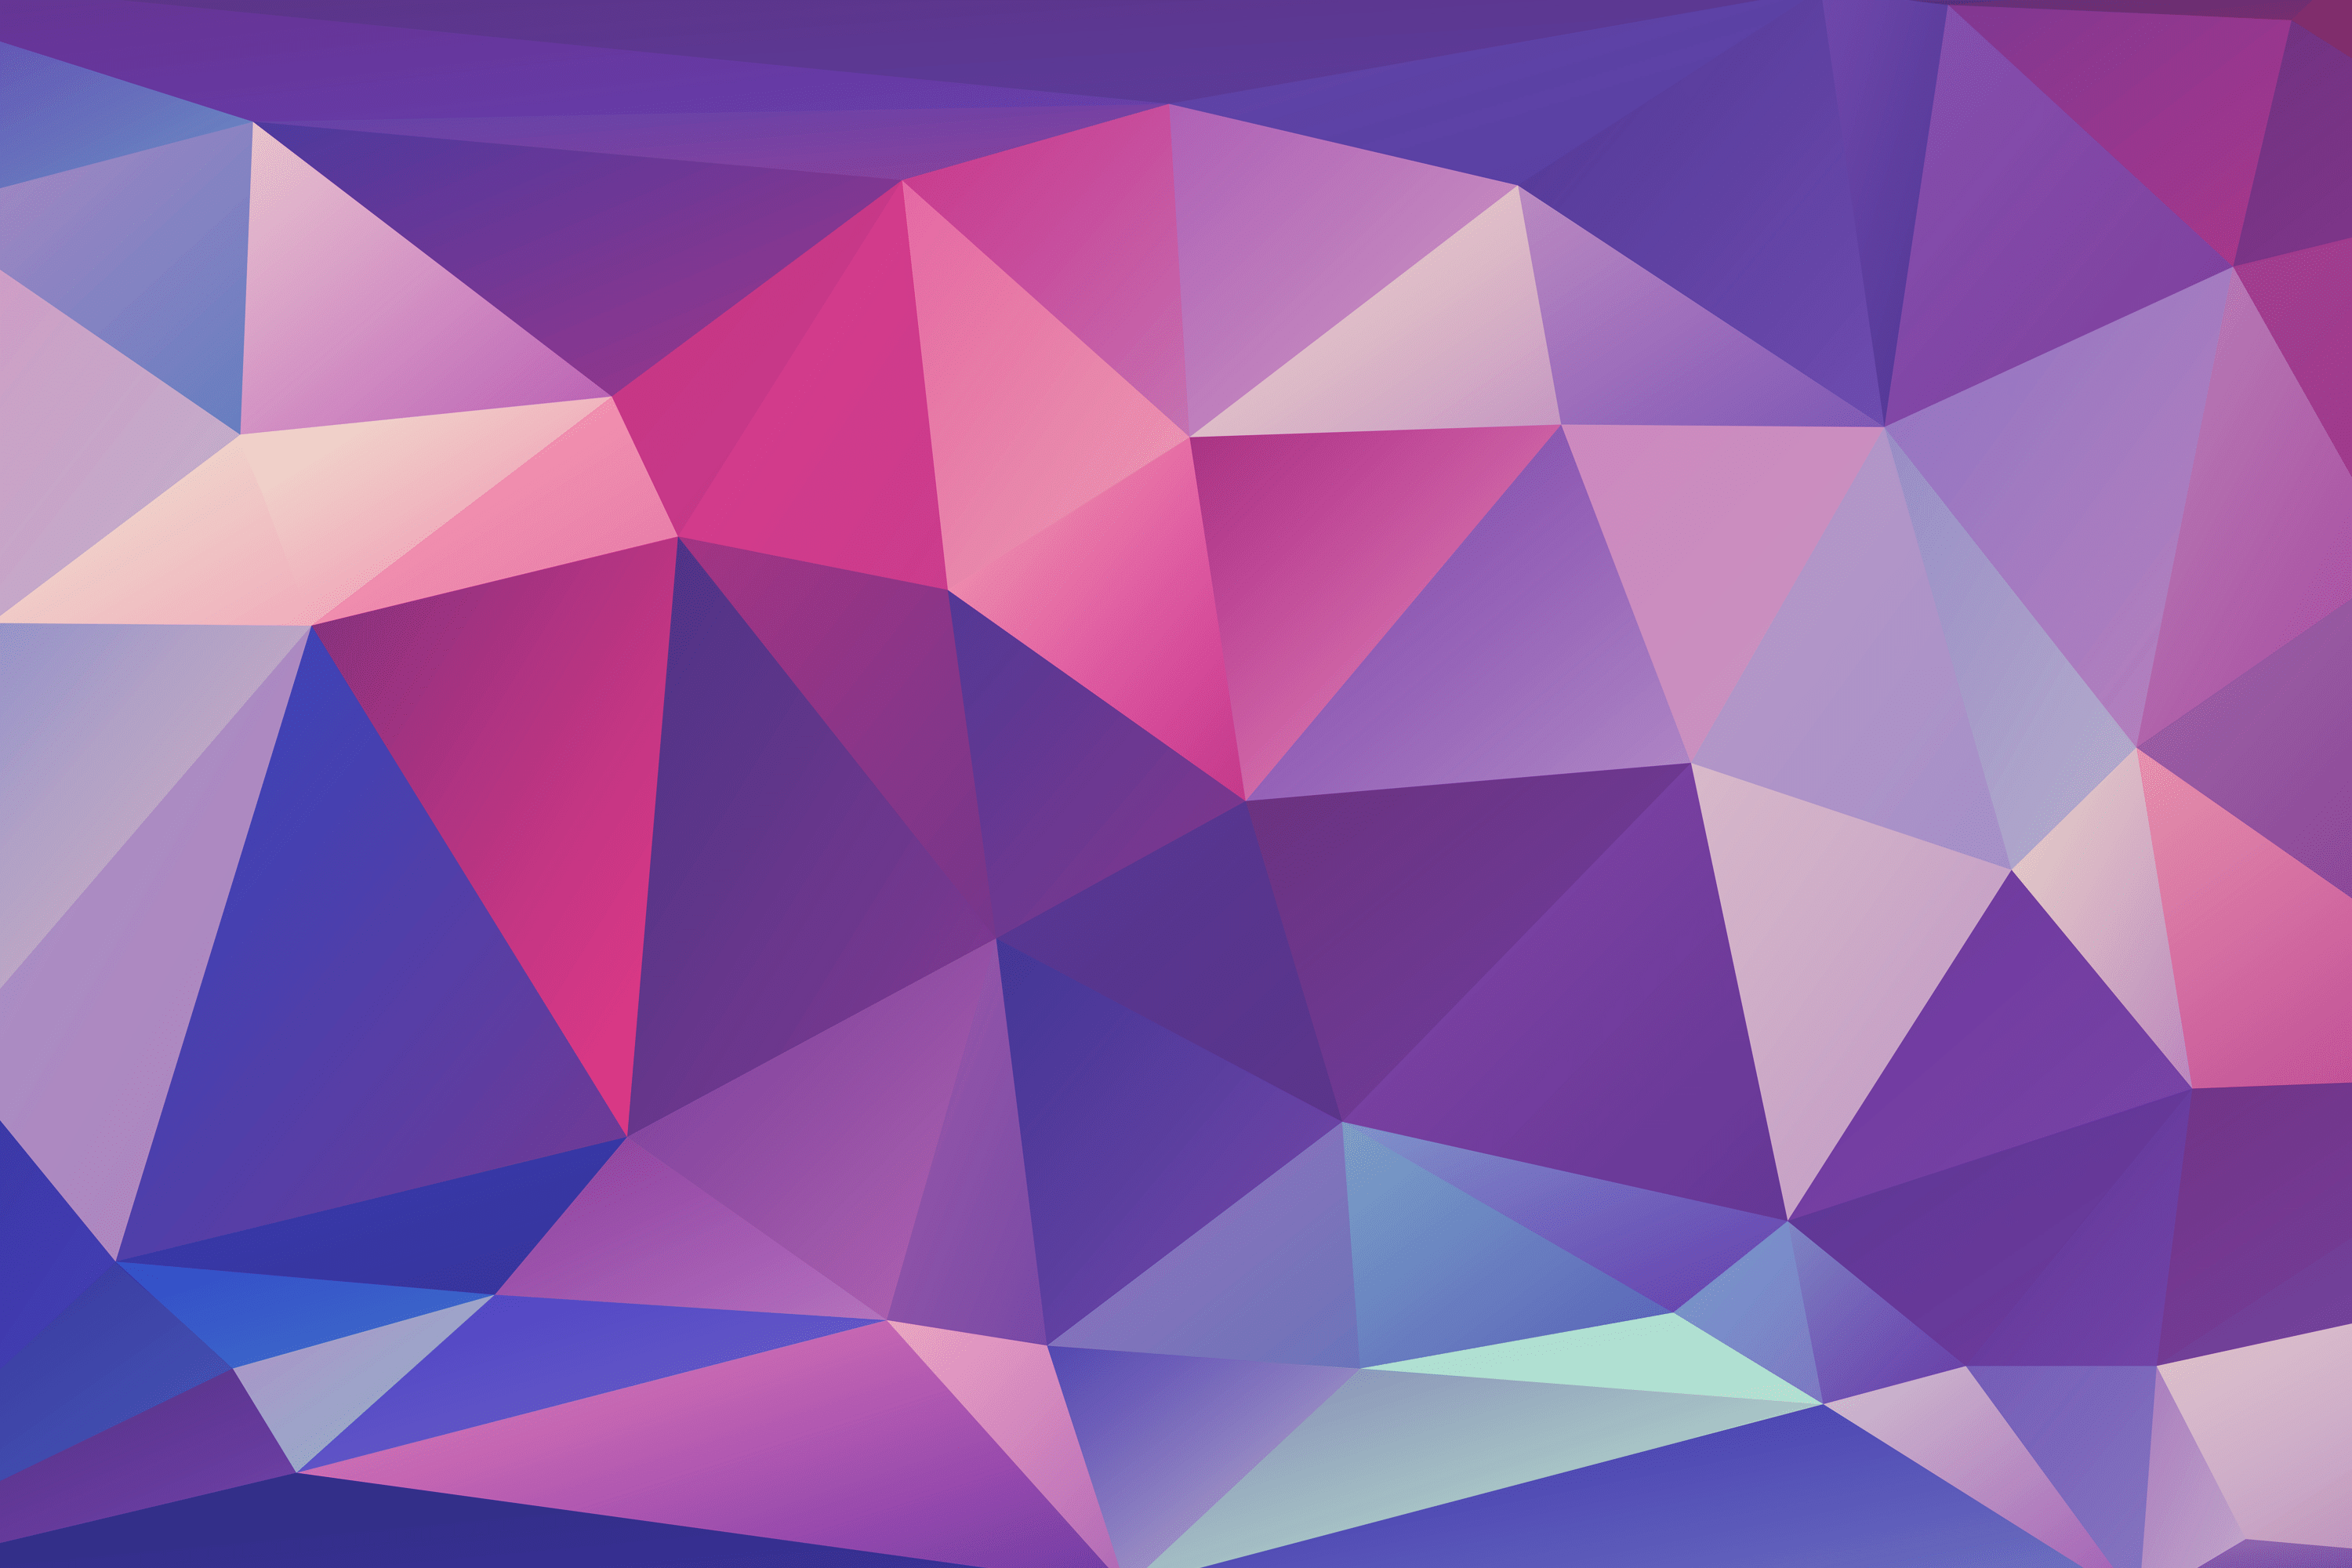 Multicolor polygon wallpaper for iPhone, iPad, or desktop